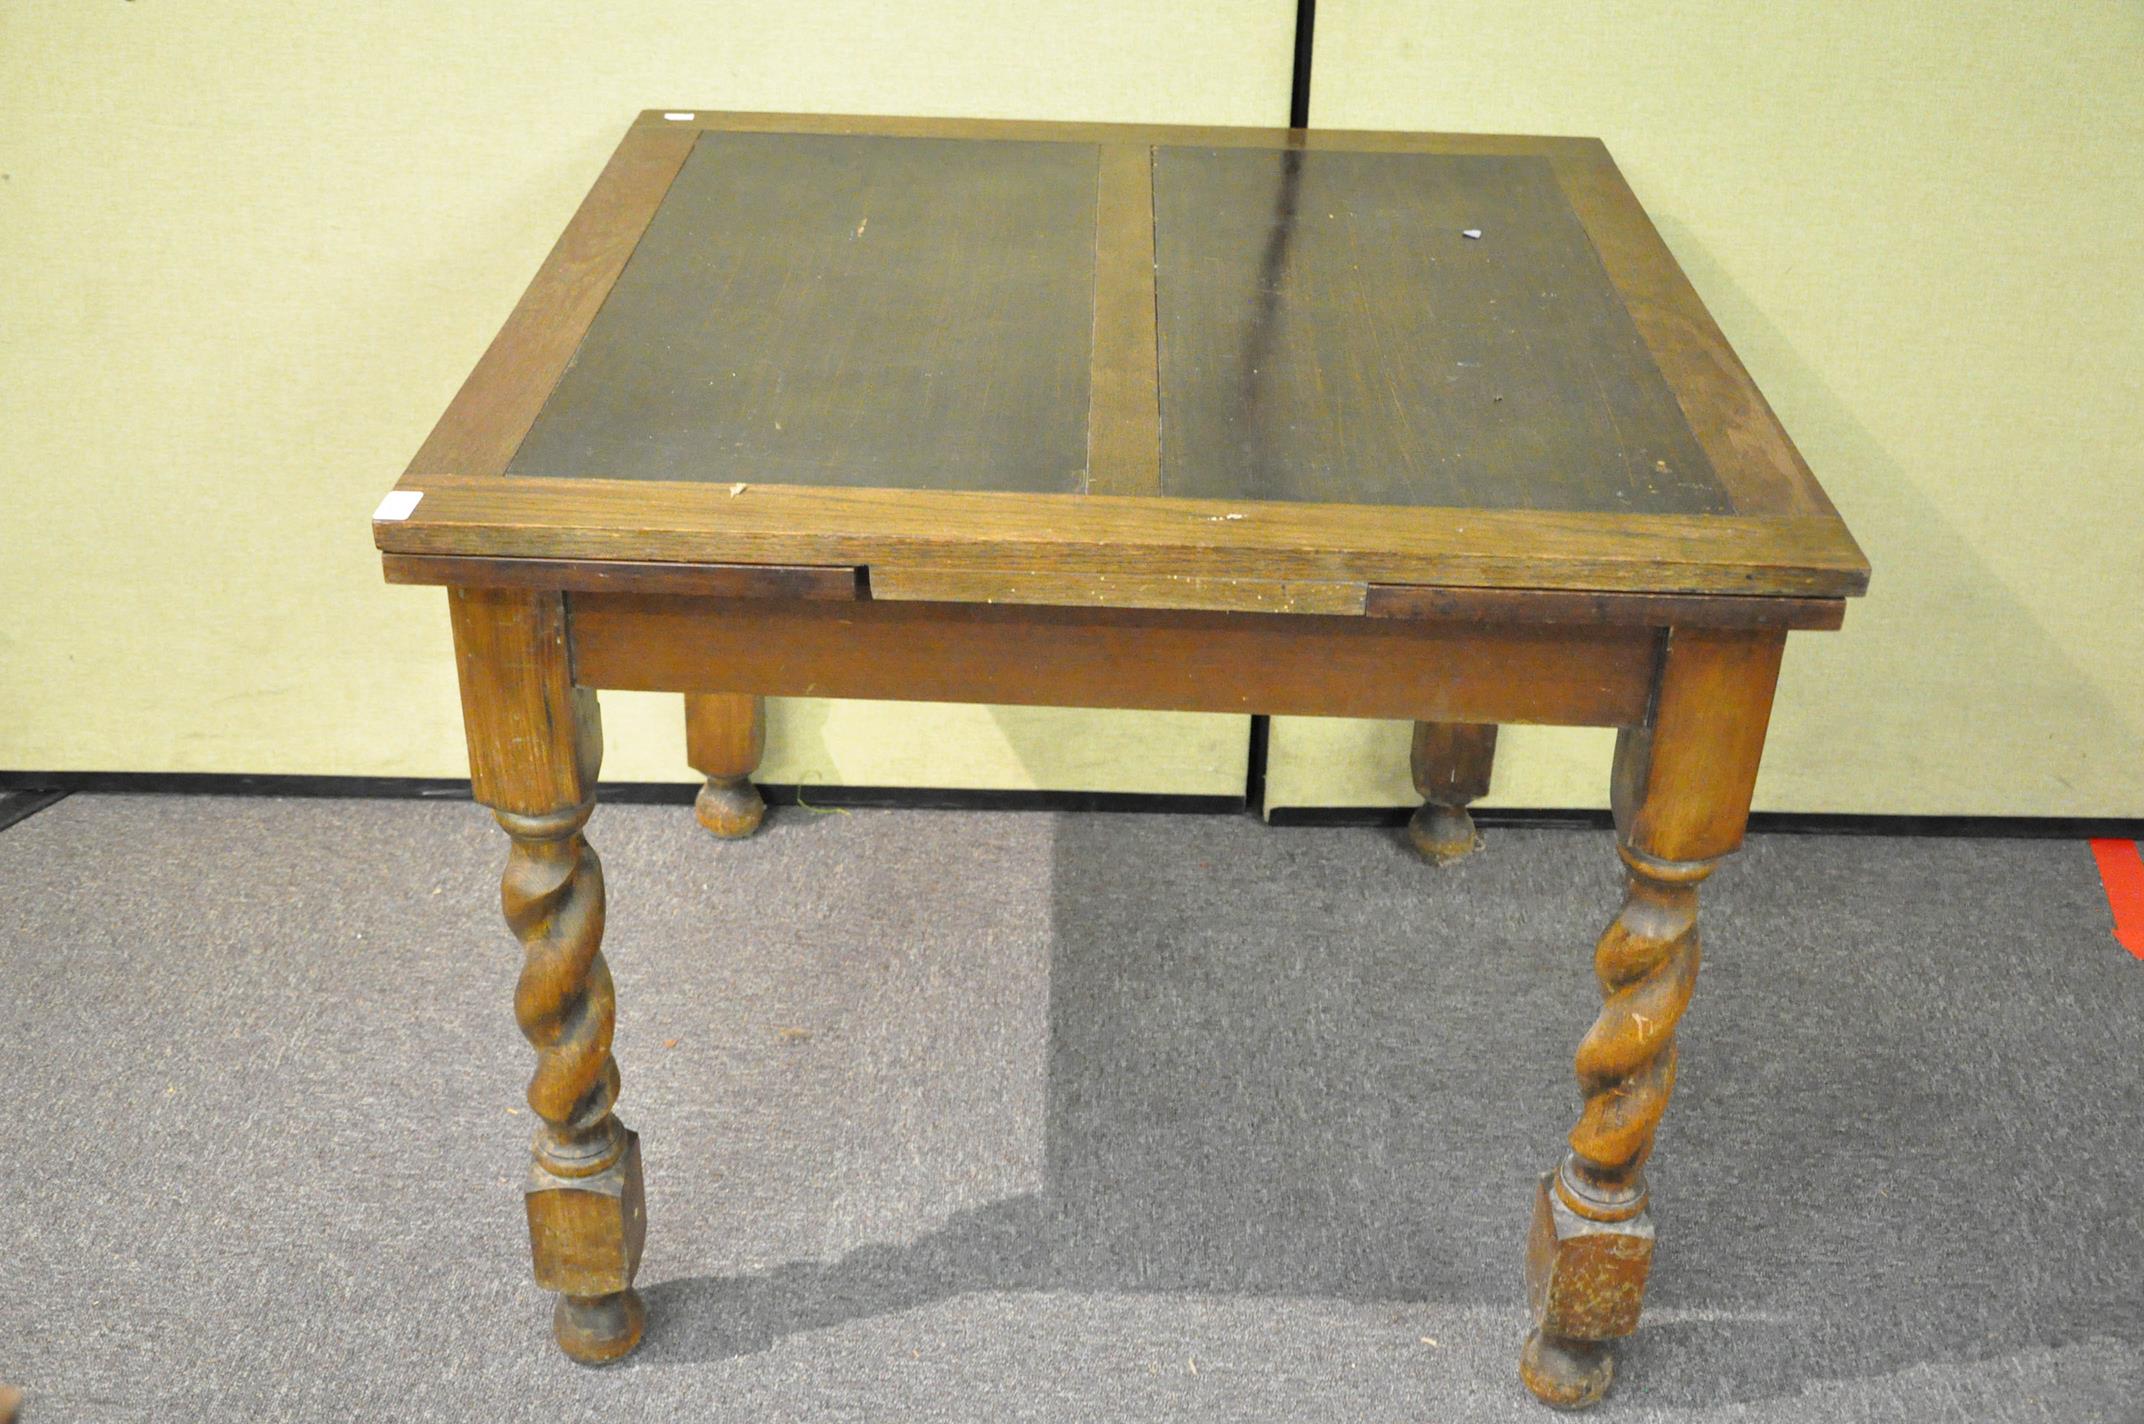 An oak draw leaf table with barley twist legs 76cmH x 90cmW x 90cmD